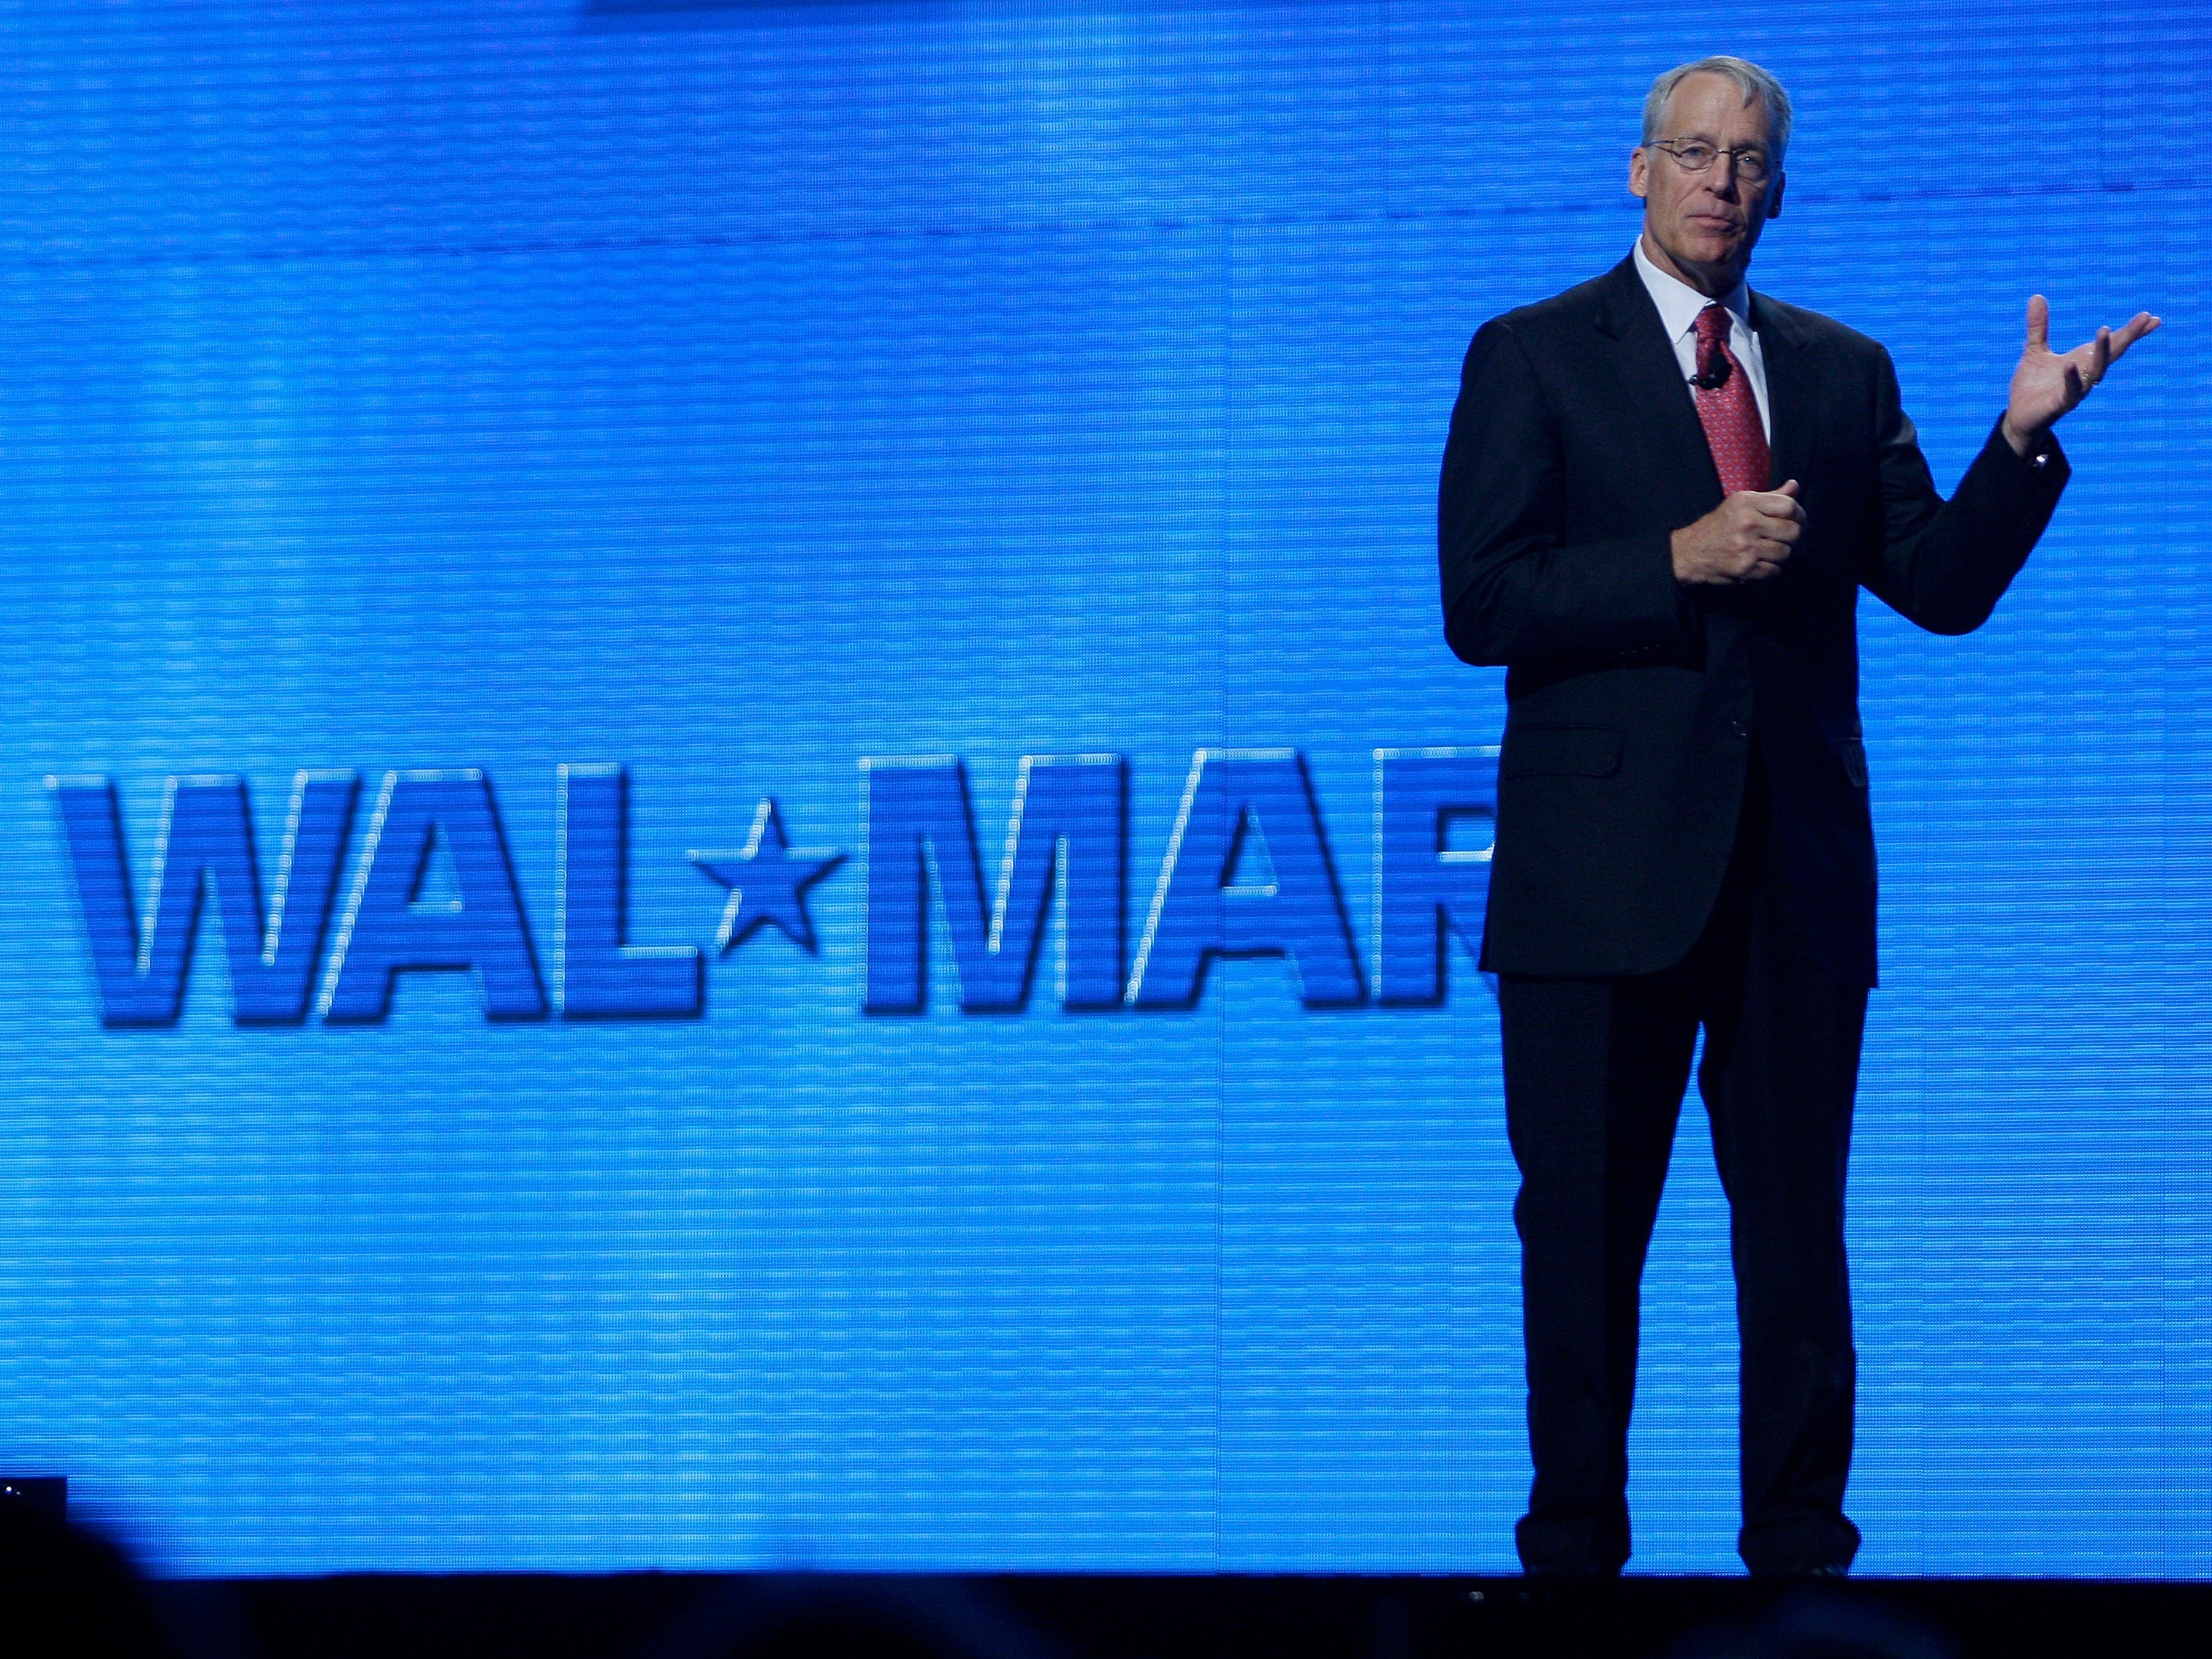 Rob Walton gestikuliert auf der Bühne vor dem blauen Walmart-Logo